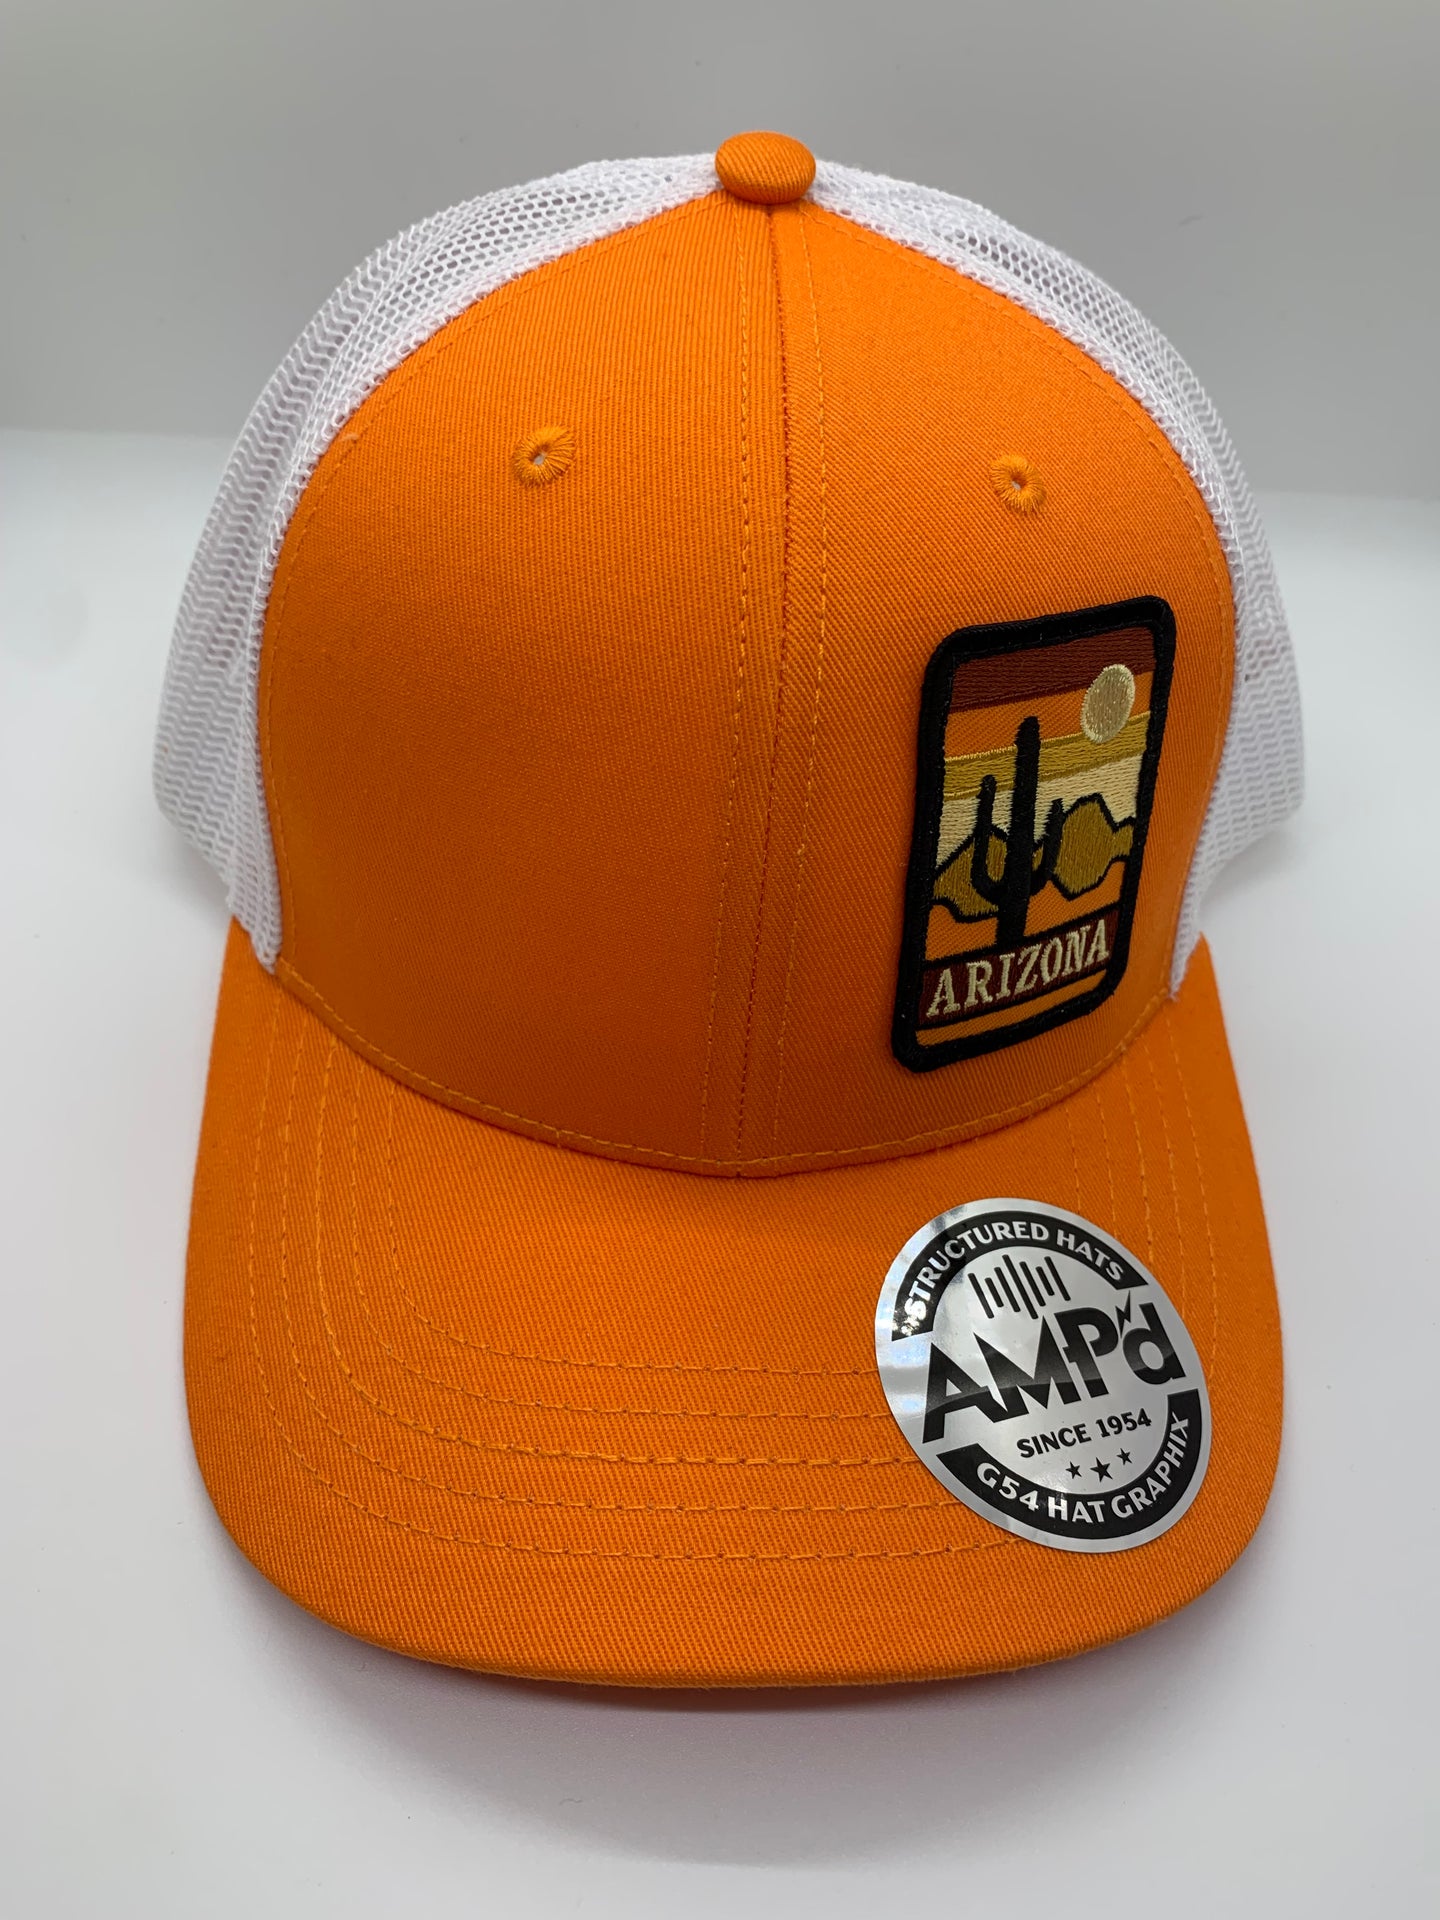 G54 Gray and Orange Arizona Trucker Hat